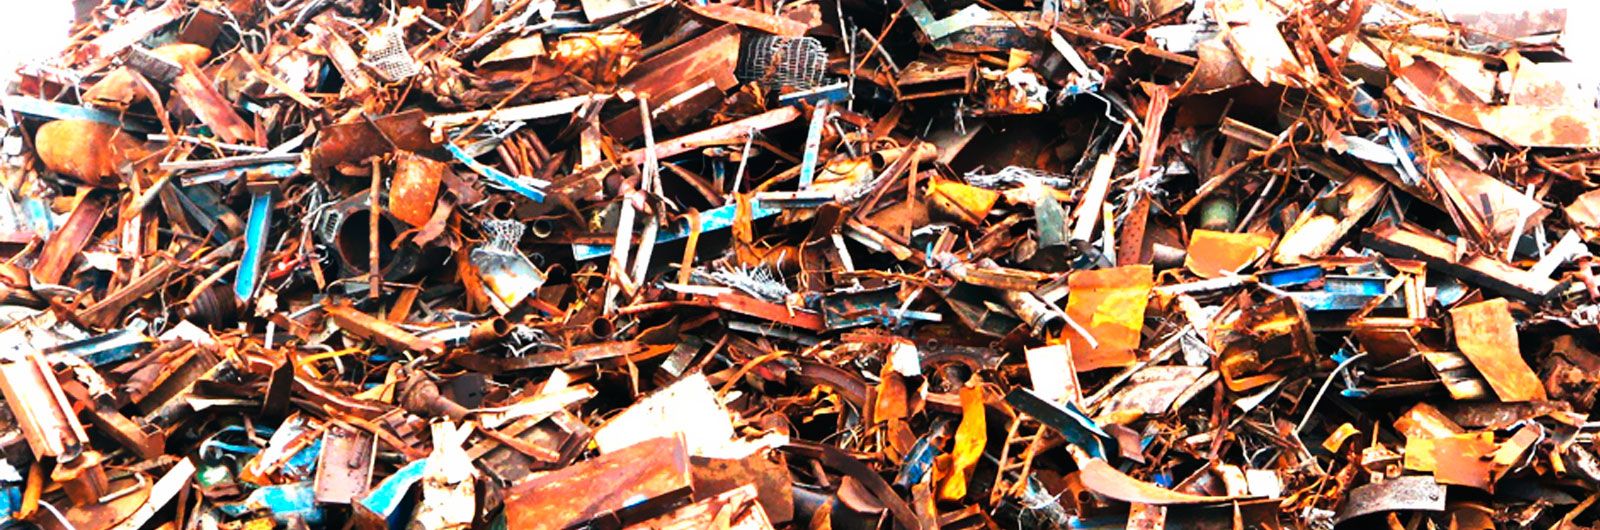 Recuperaciones Gil Benavent escombros de reciclaje